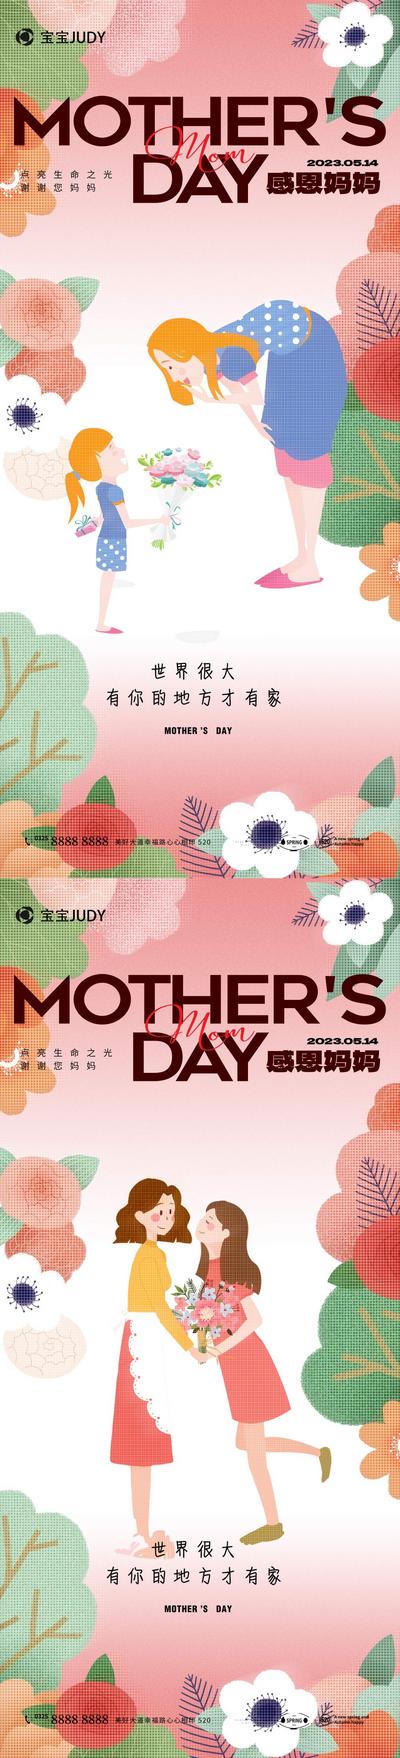 南门网 广告 海报 节日 母亲节 插画 创意 个性 温馨 鲜花